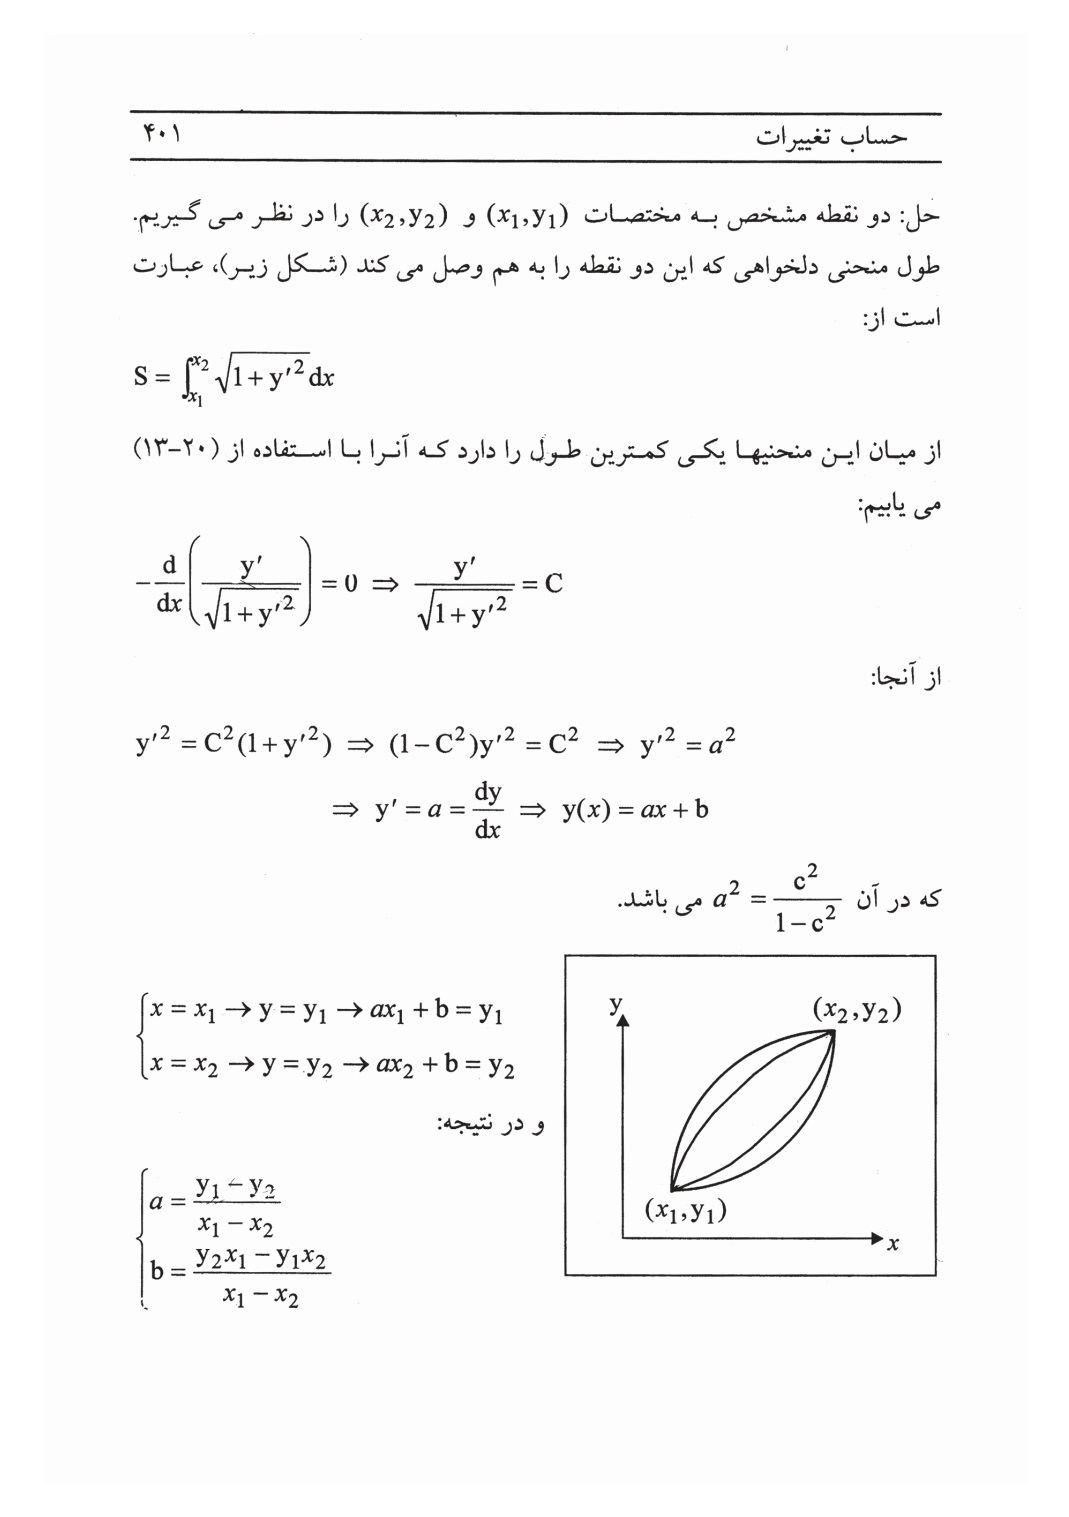 دانلود پی دی اف کتاب ریاضیات مهندسی پیشرفته از امیررضا شاهانی - 412 صفحه PDF